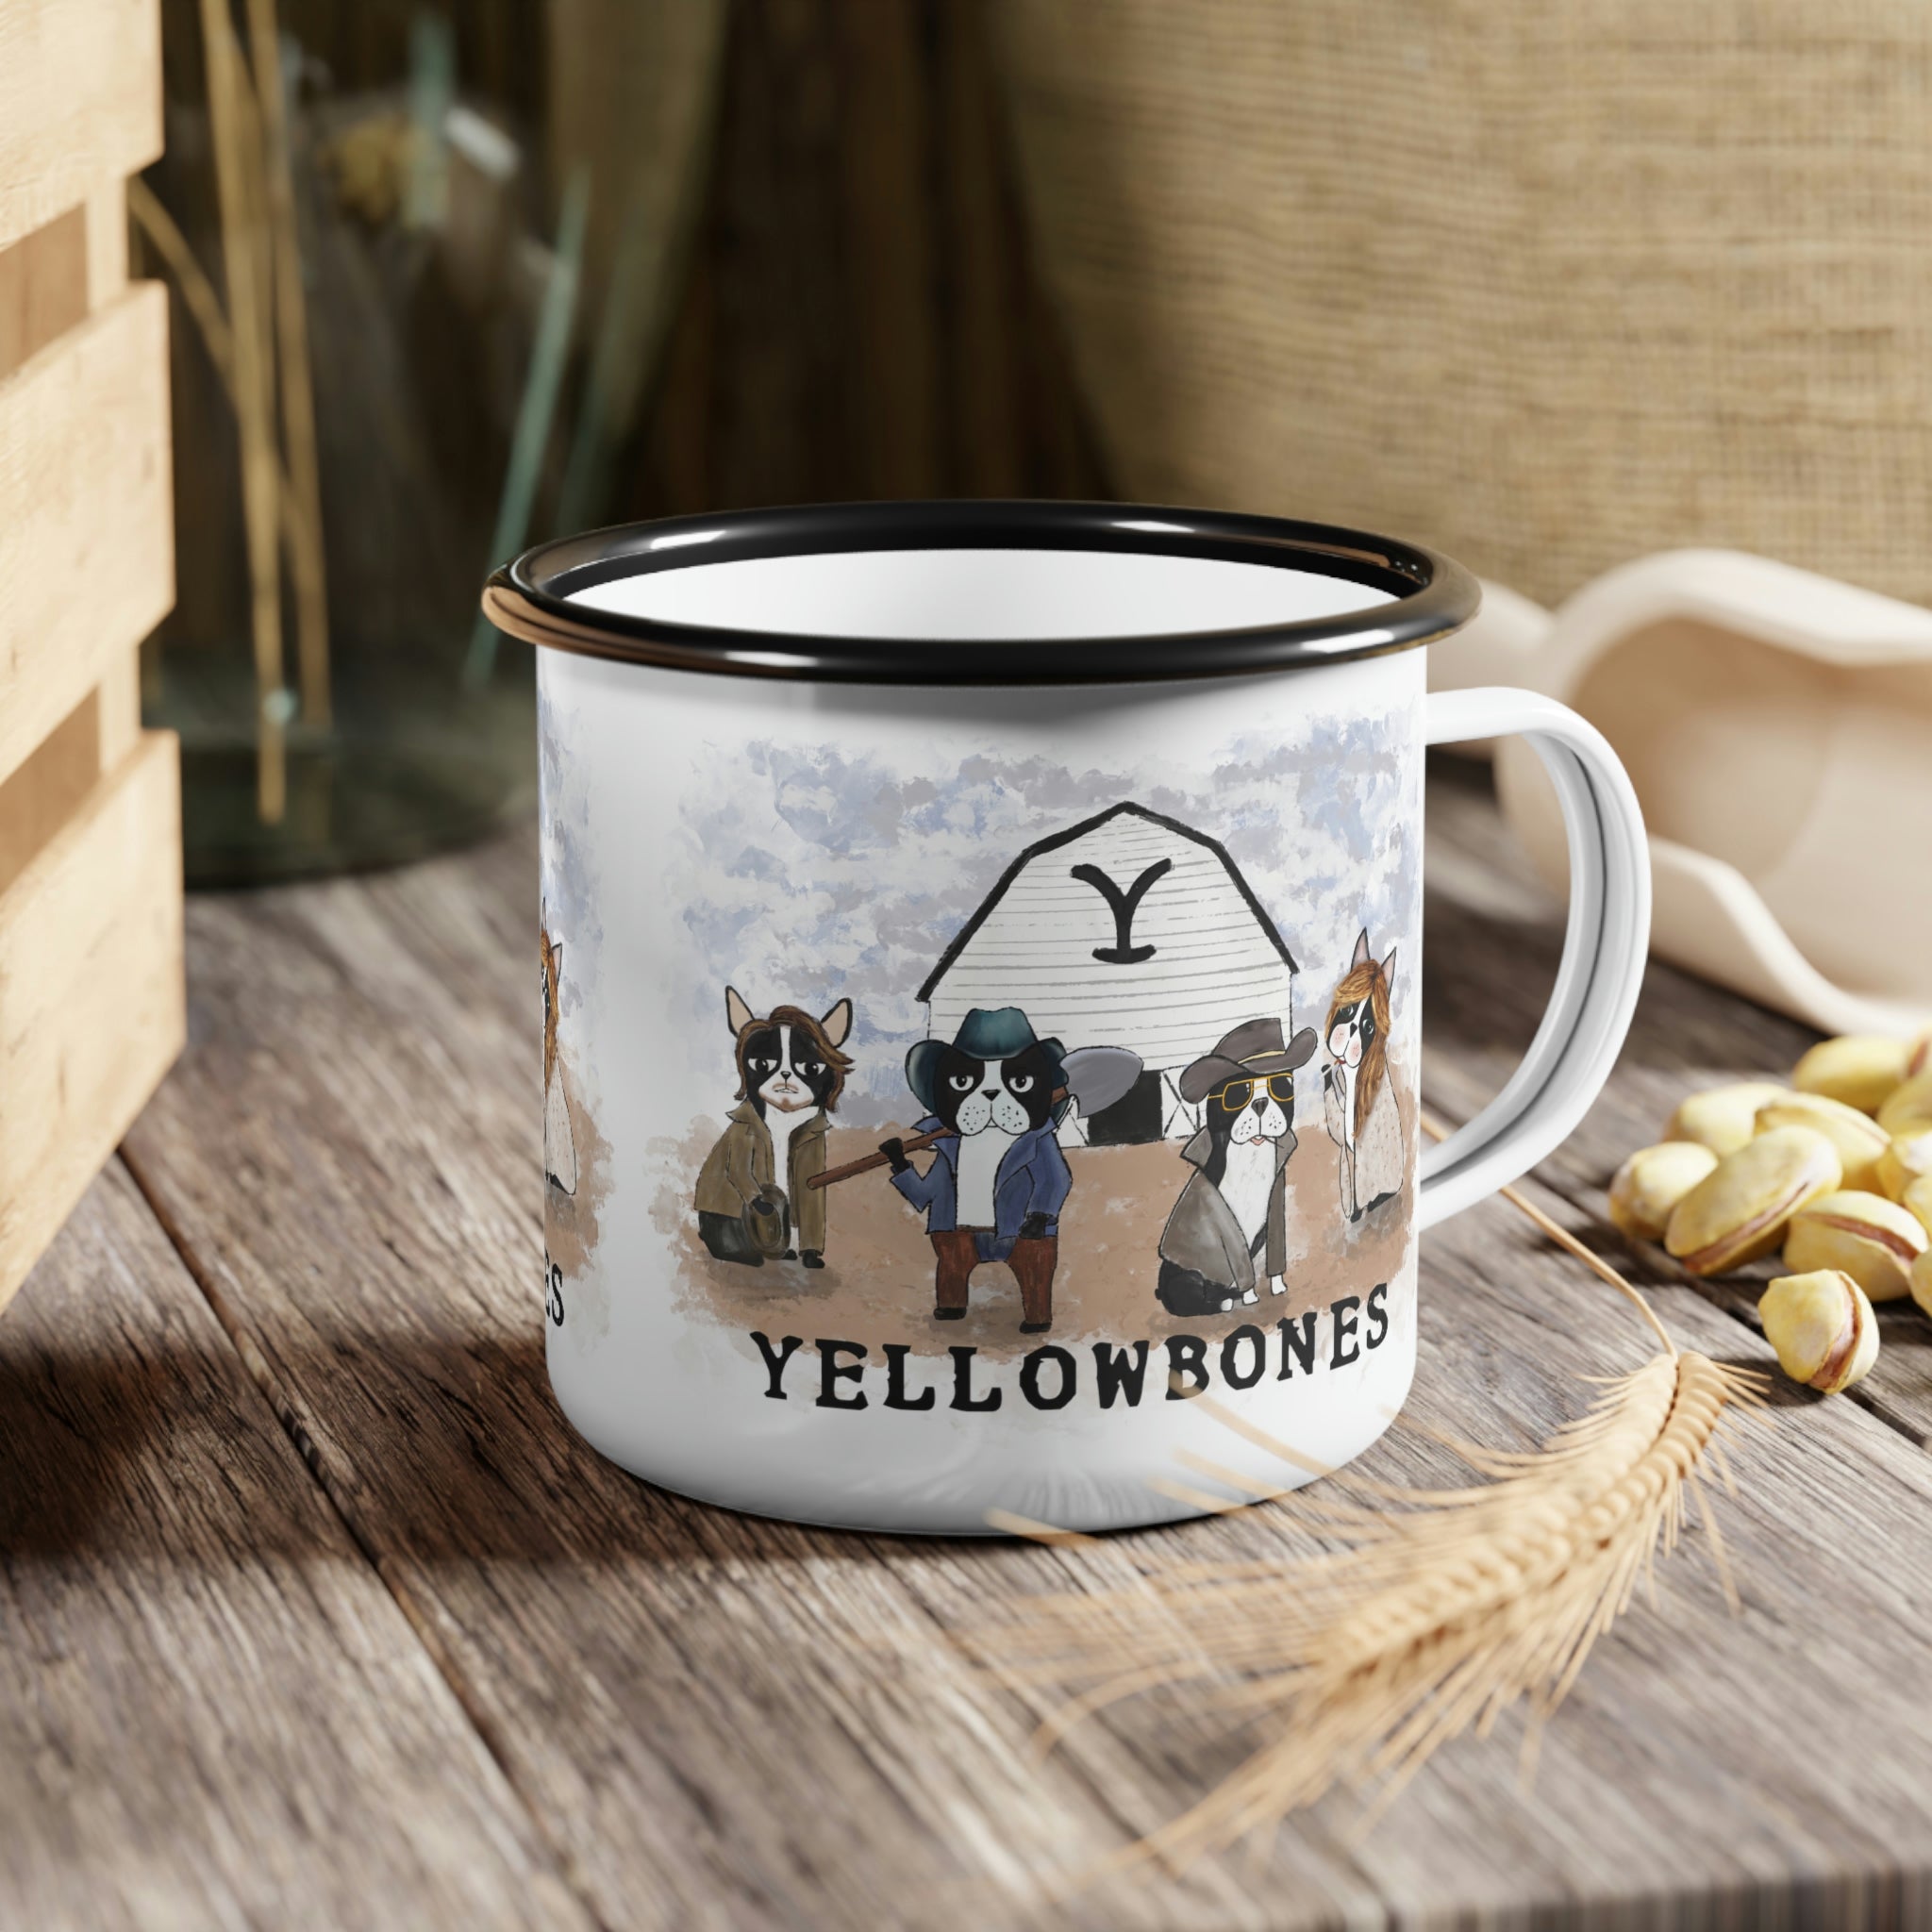 Yellowbones Camping Mug Camp Cup